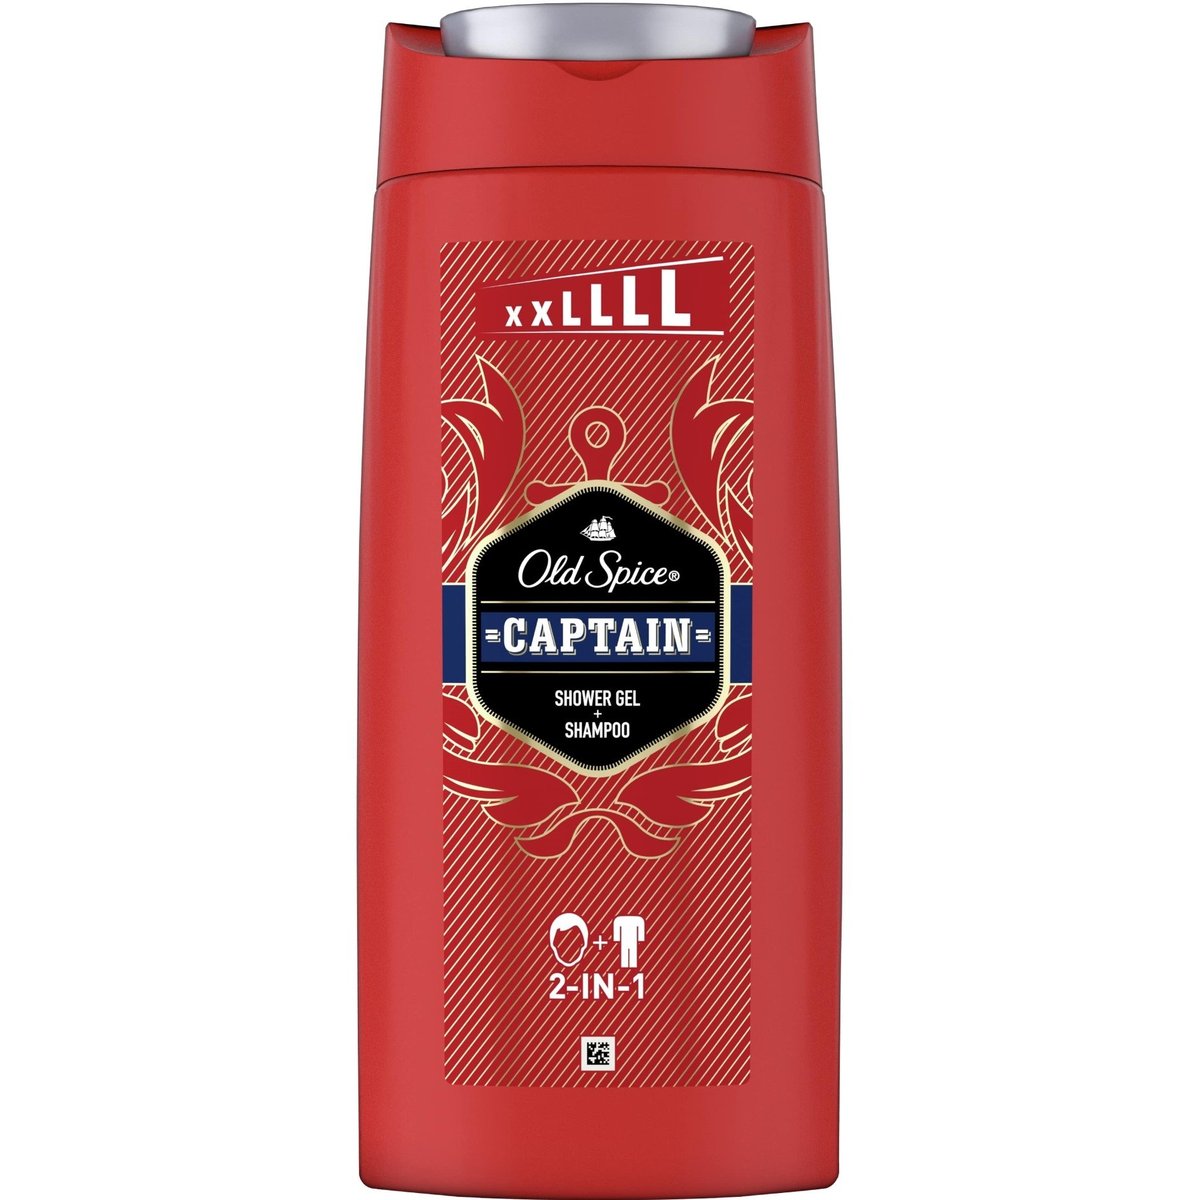 Old Spice Captain sprchový gel a šampon pro muže